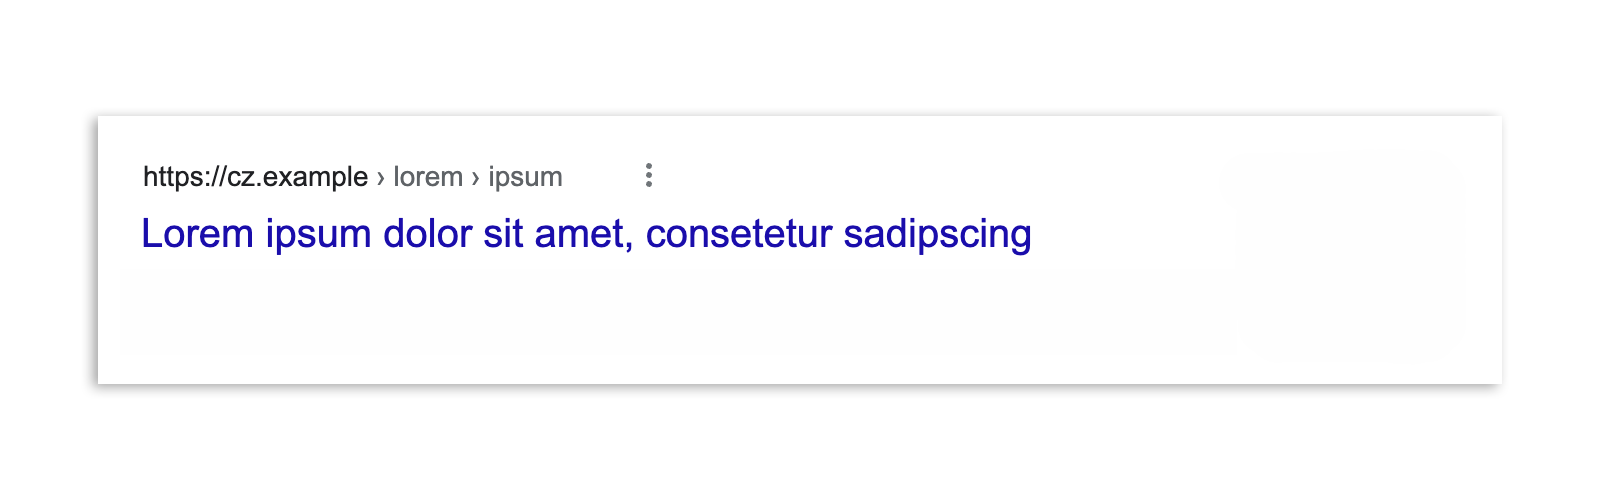 Một kết quả trên Google Tìm kiếm ở Séc sau khi luật này được ban hành, chỉ bao gồm tiêu đề của bài viết và URL.